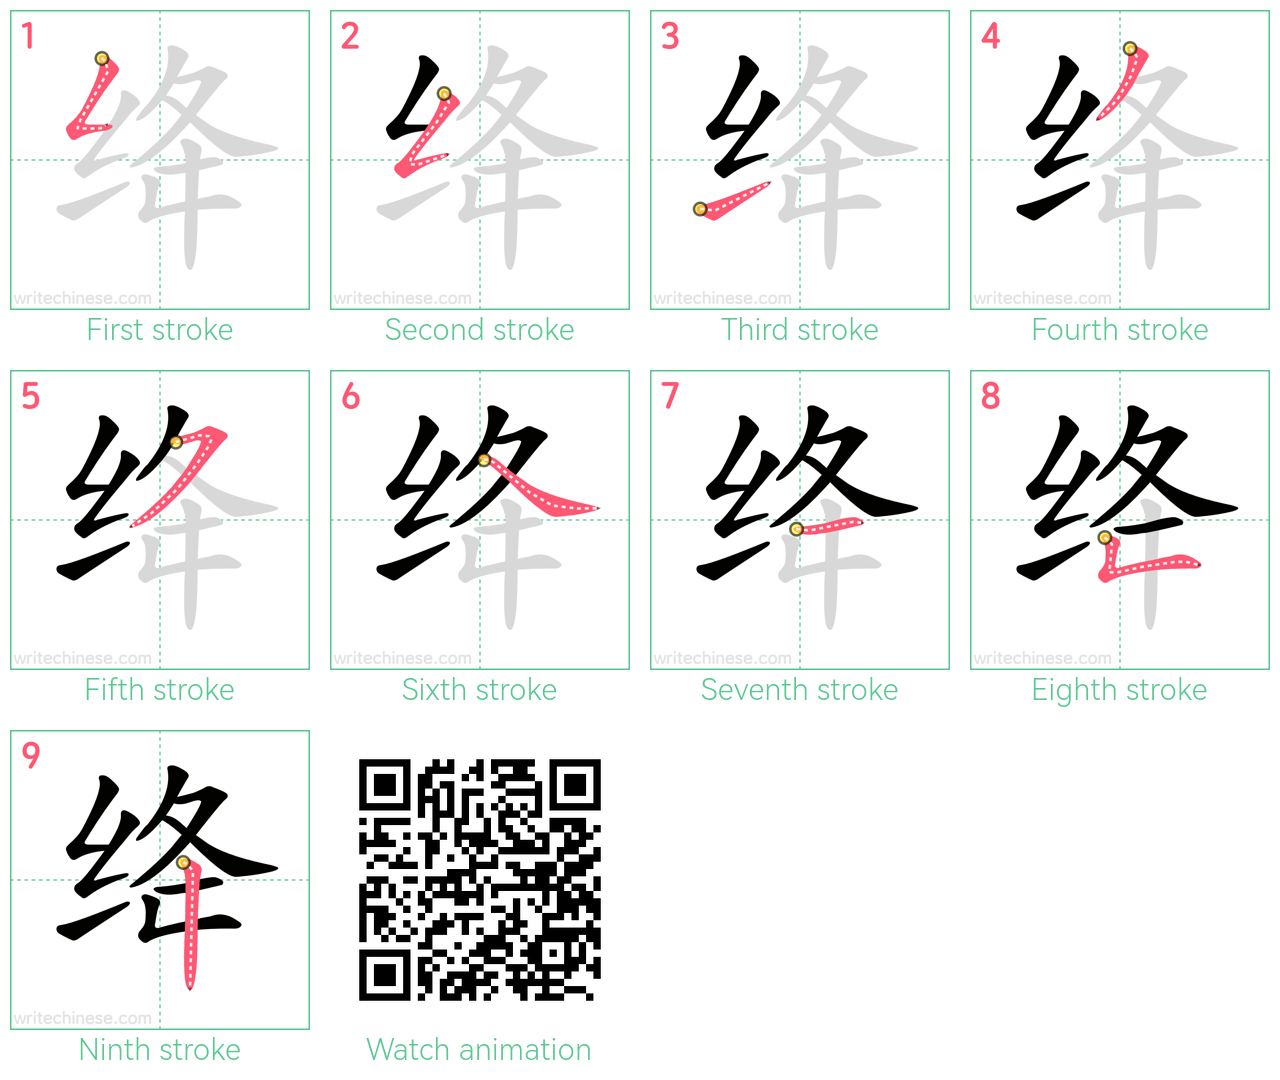 绛 step-by-step stroke order diagrams